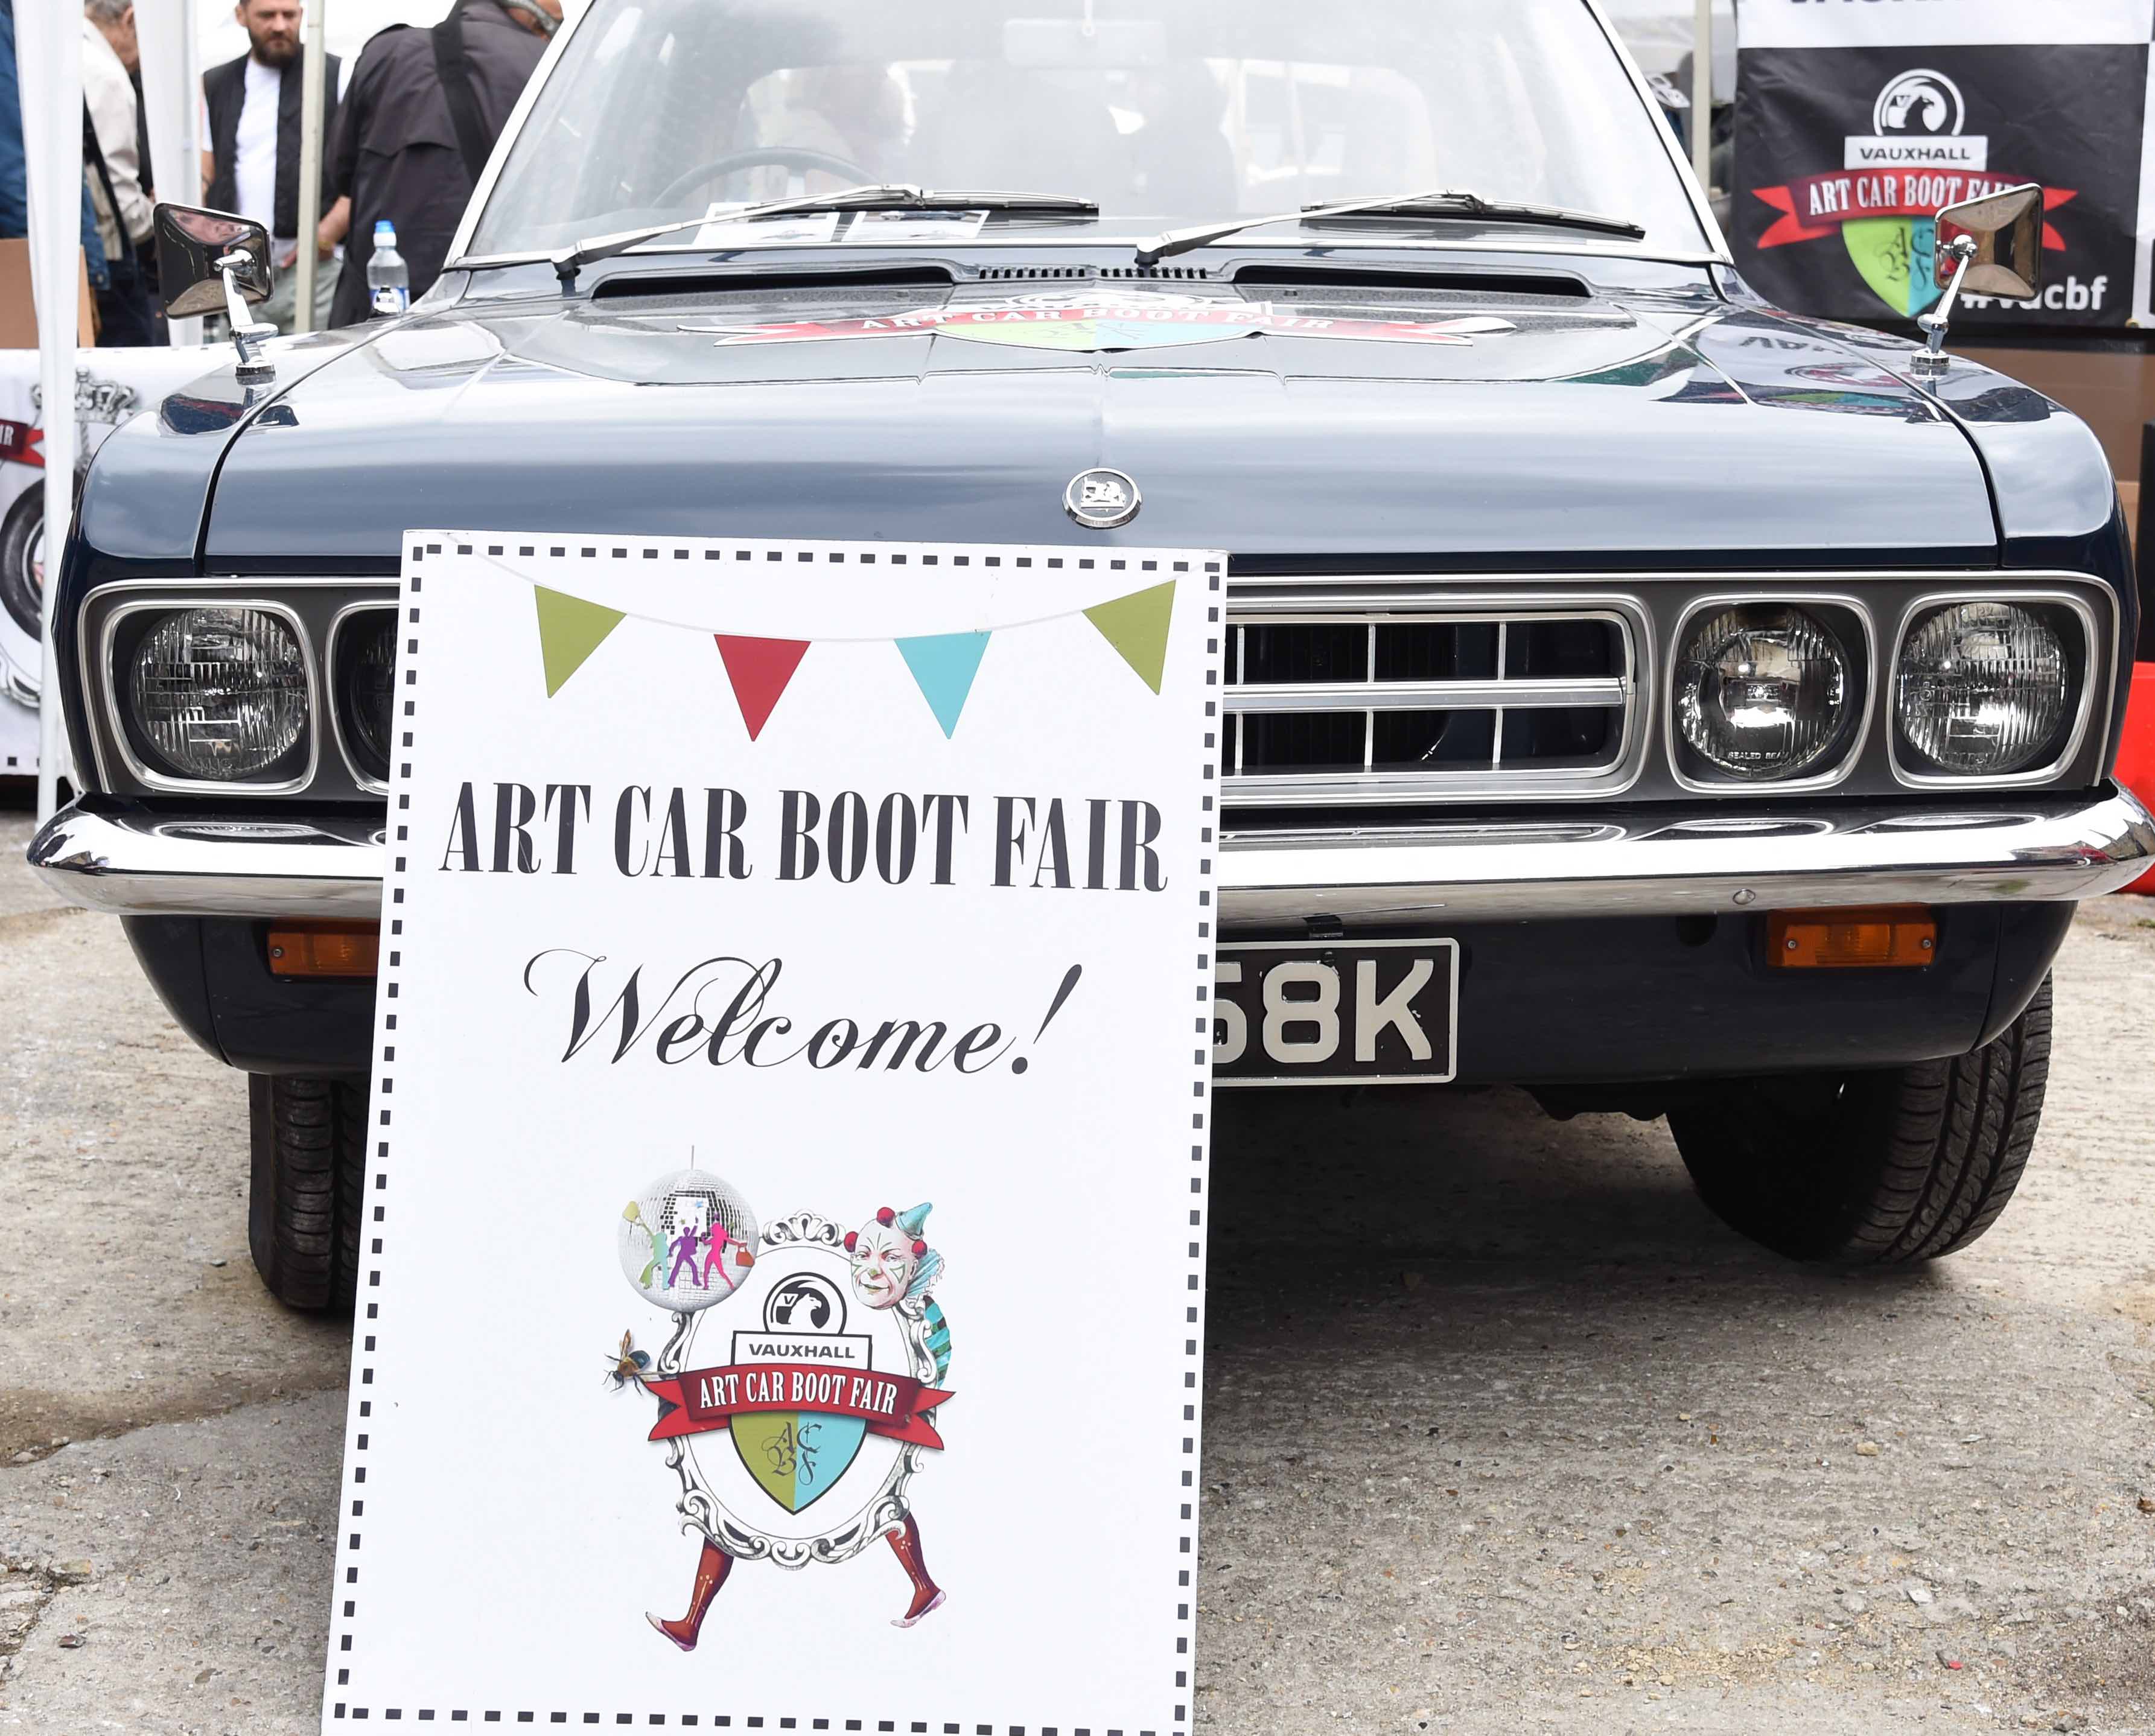 Vauxhall Art Car Boot Fair 2015 on Sunday 14th June 2015 